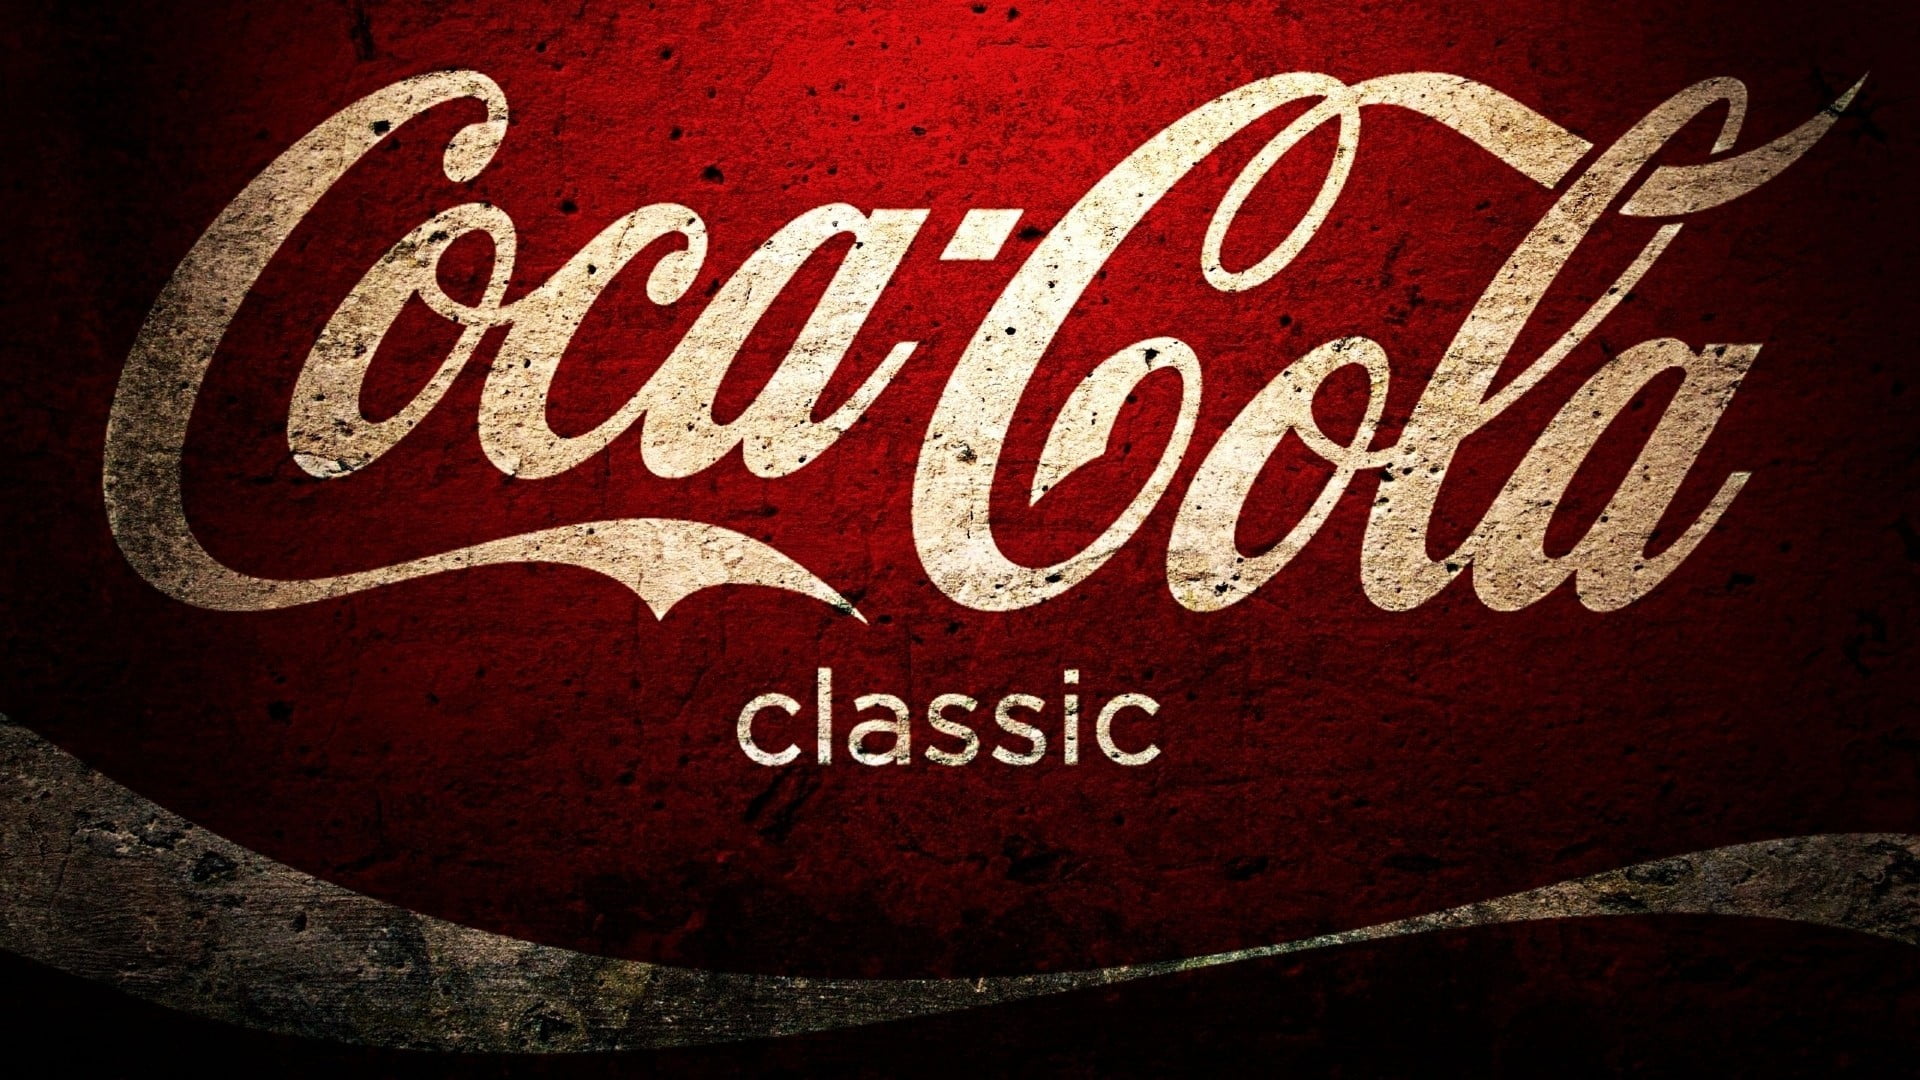 Coca-Cola Classic poster, Coca-Cola, logo, typography, digital art HD